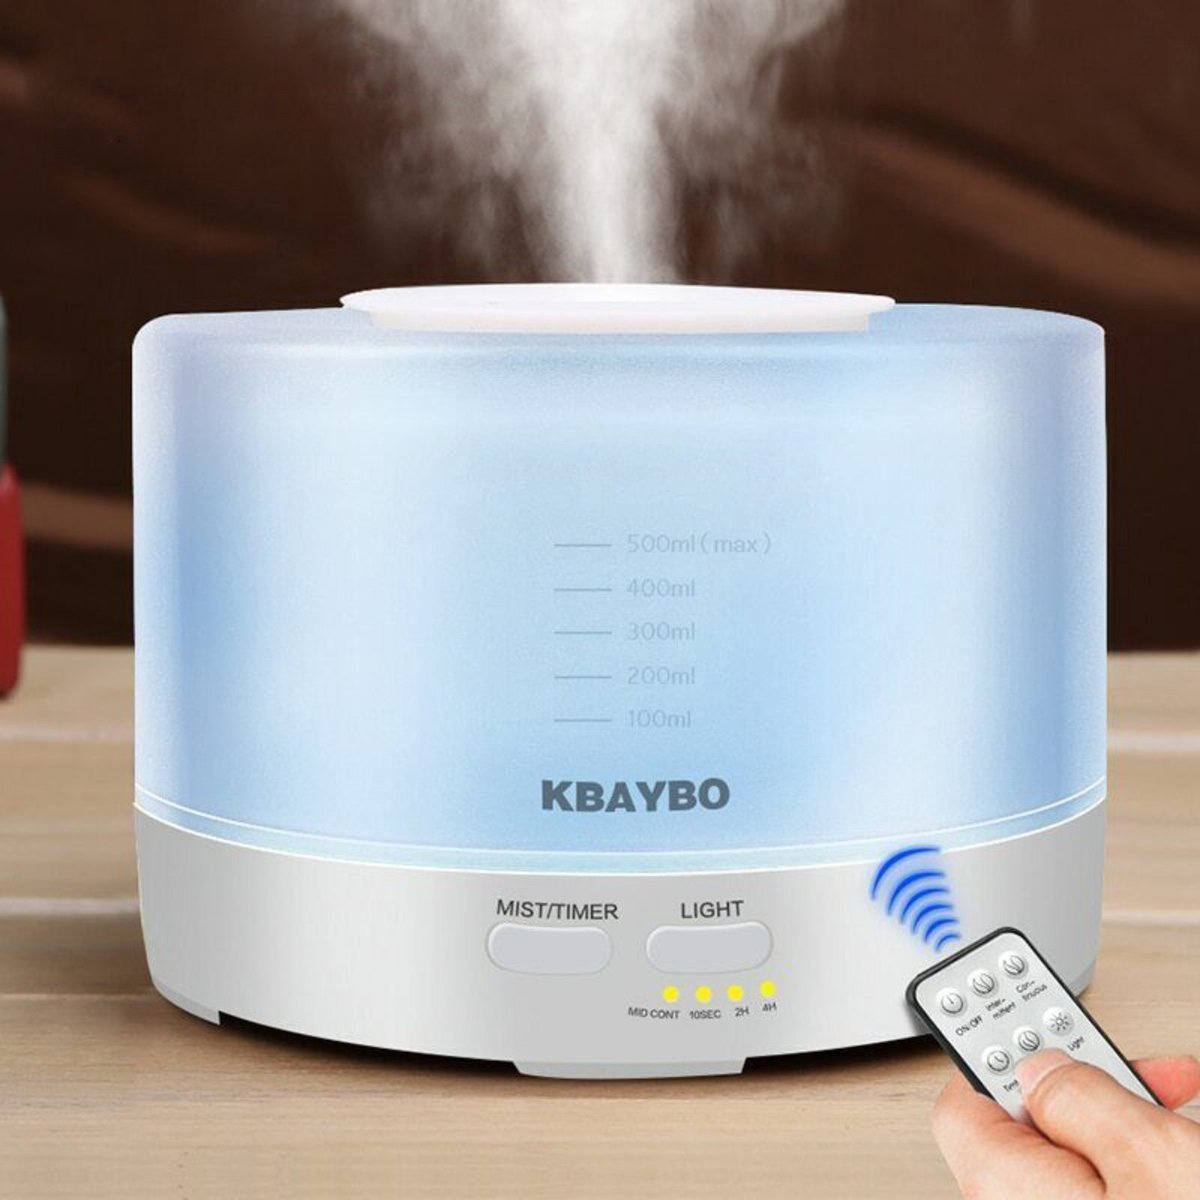 Kbaybo aroma diffuser met afstandsbediening